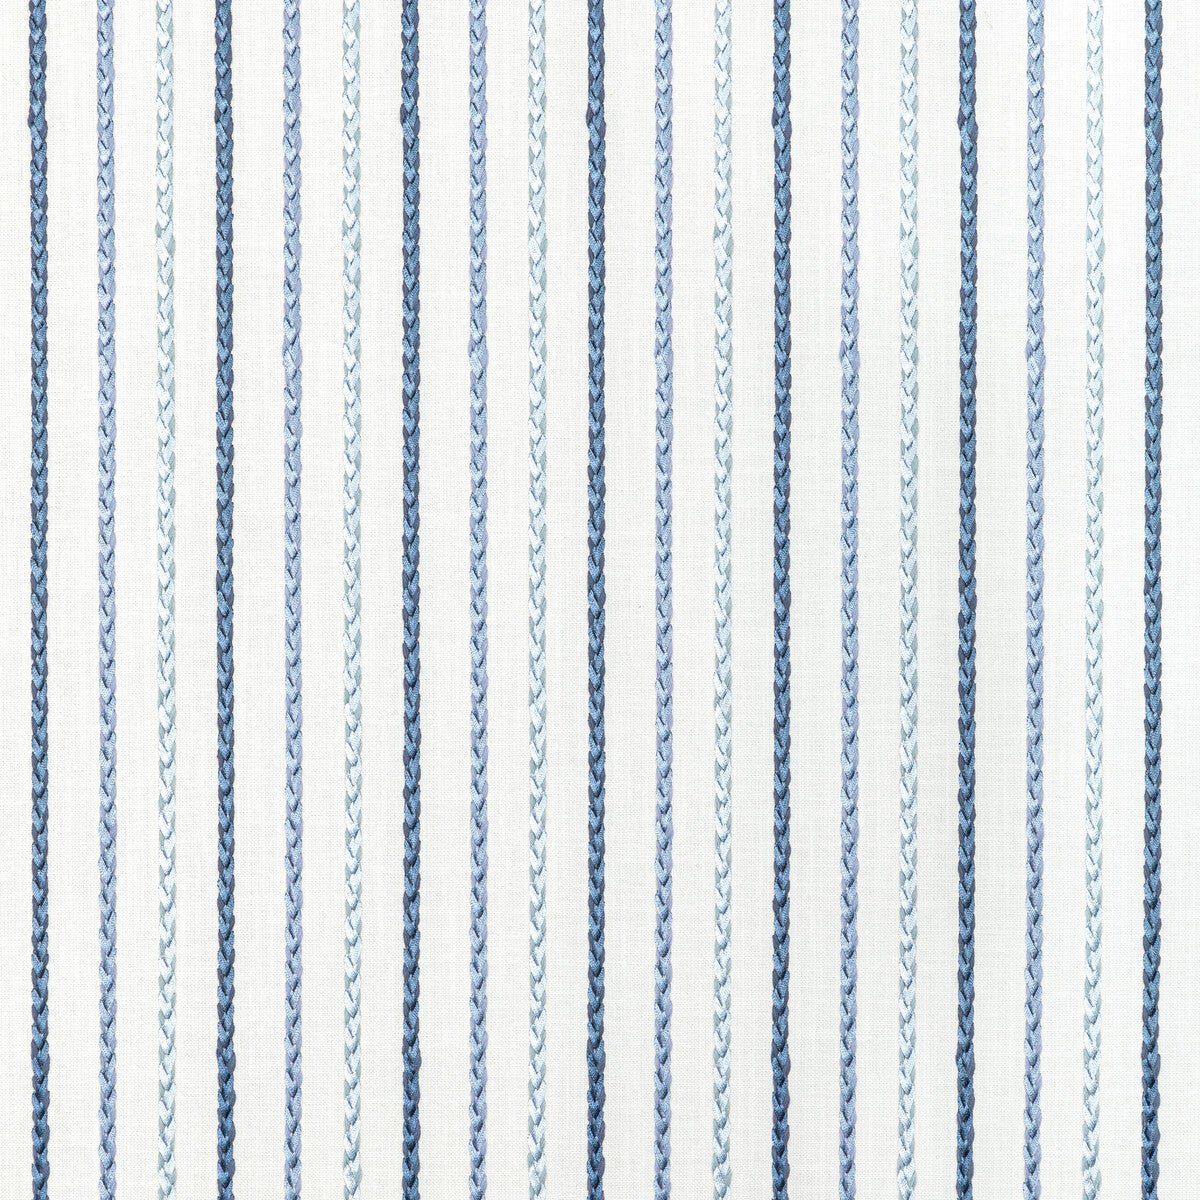 Kravet Basics fabric in 36033-15 color - pattern 36033.15.0 - by Kravet Basics